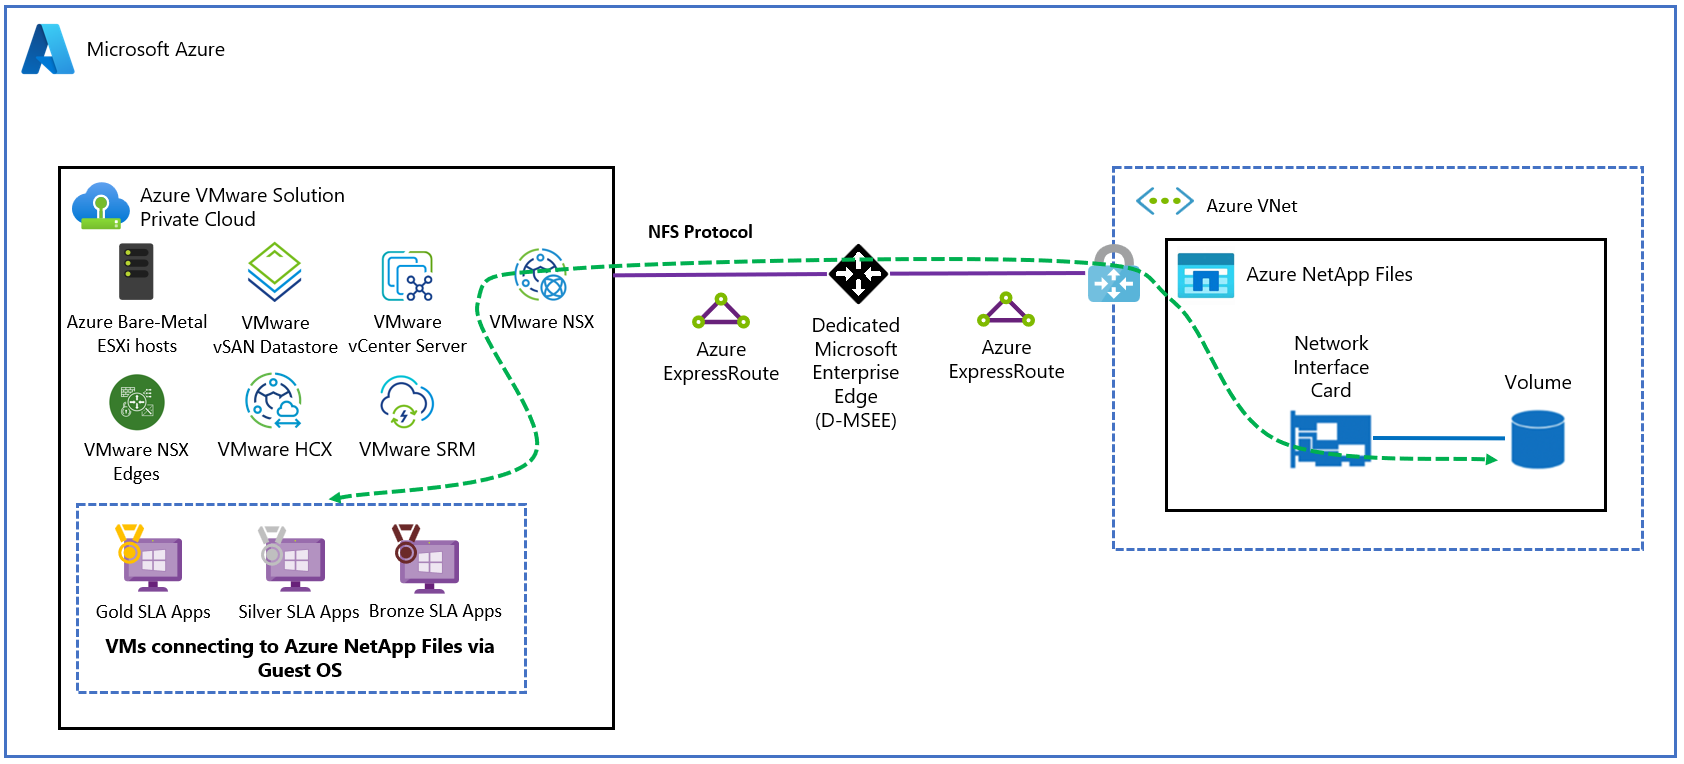 Diagramm: NetApp Files für Azure VMware Solution-Architektur